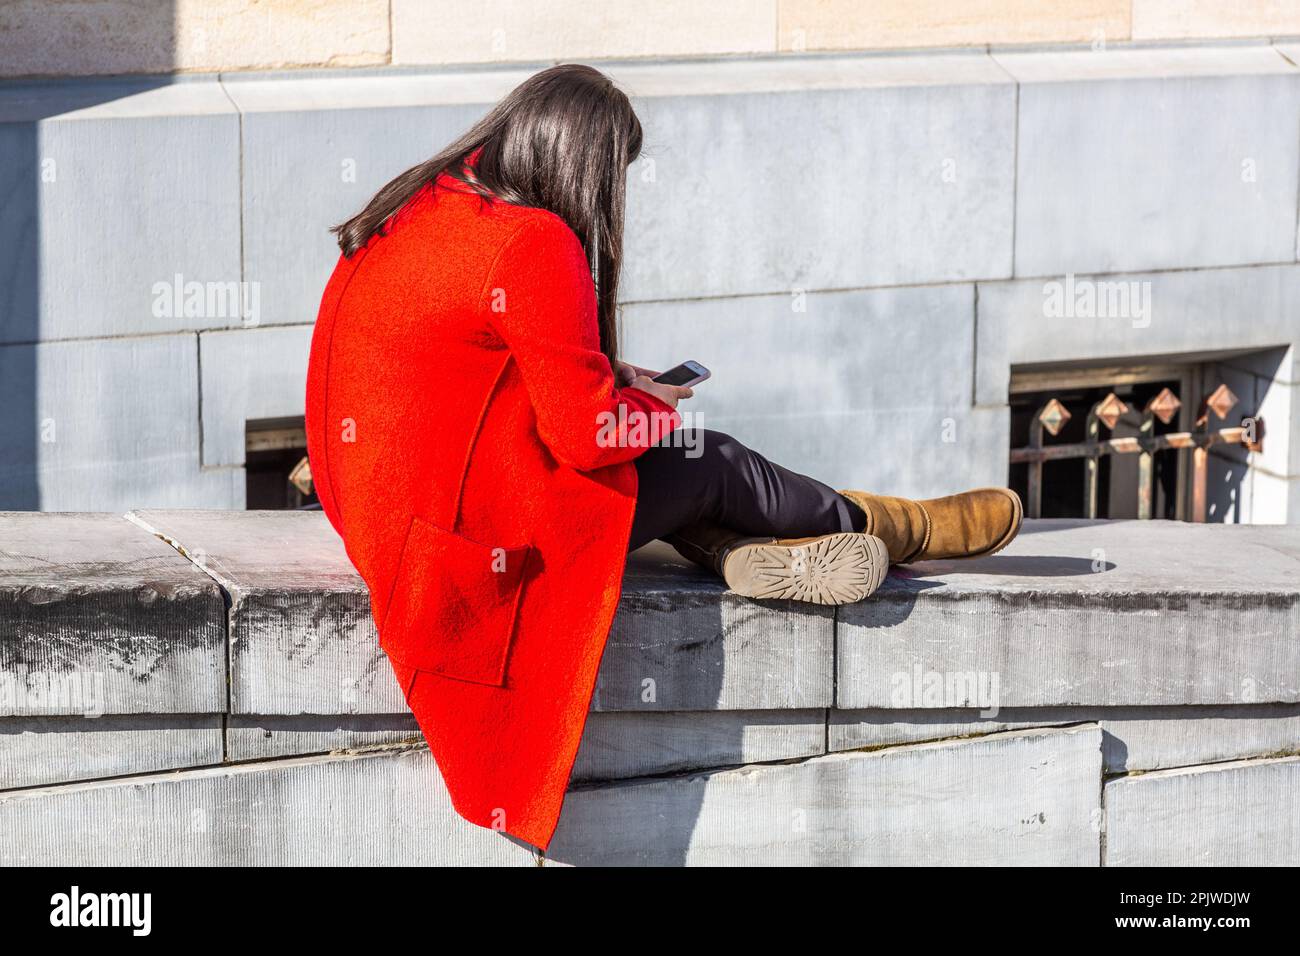 Junge Frau in einem leuchtend roten Mantel, die auf ihr Handy schaut, auf einer Brüstung sitzt. Mont des Arts, Brüssel. Stockfoto